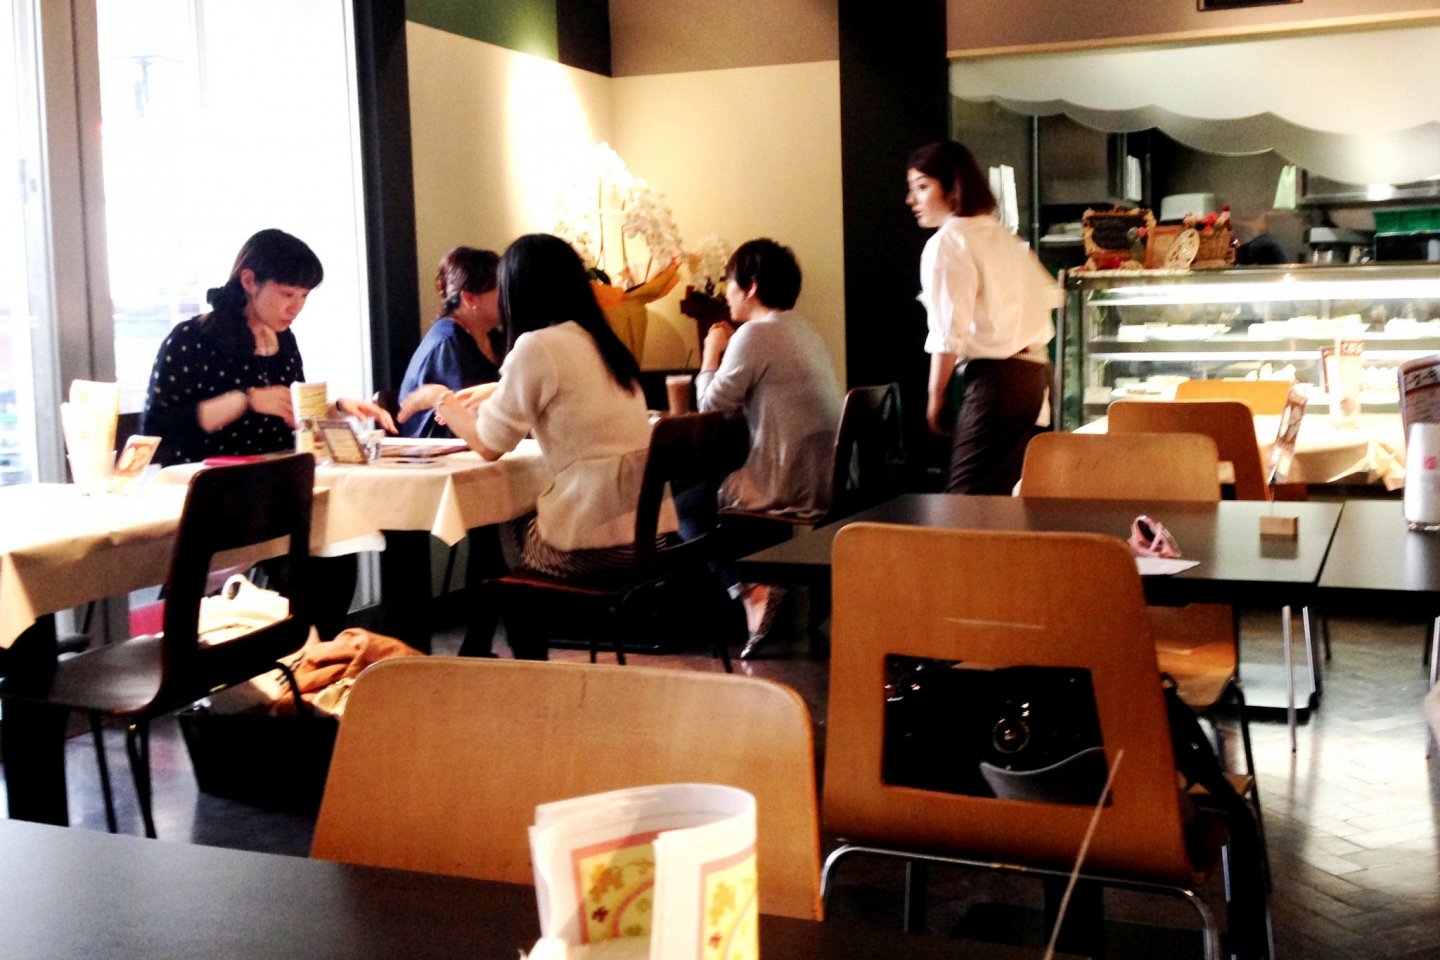 Say hi to Sato san and the friendly team at Cafe de Take at Harajuku Omotesando